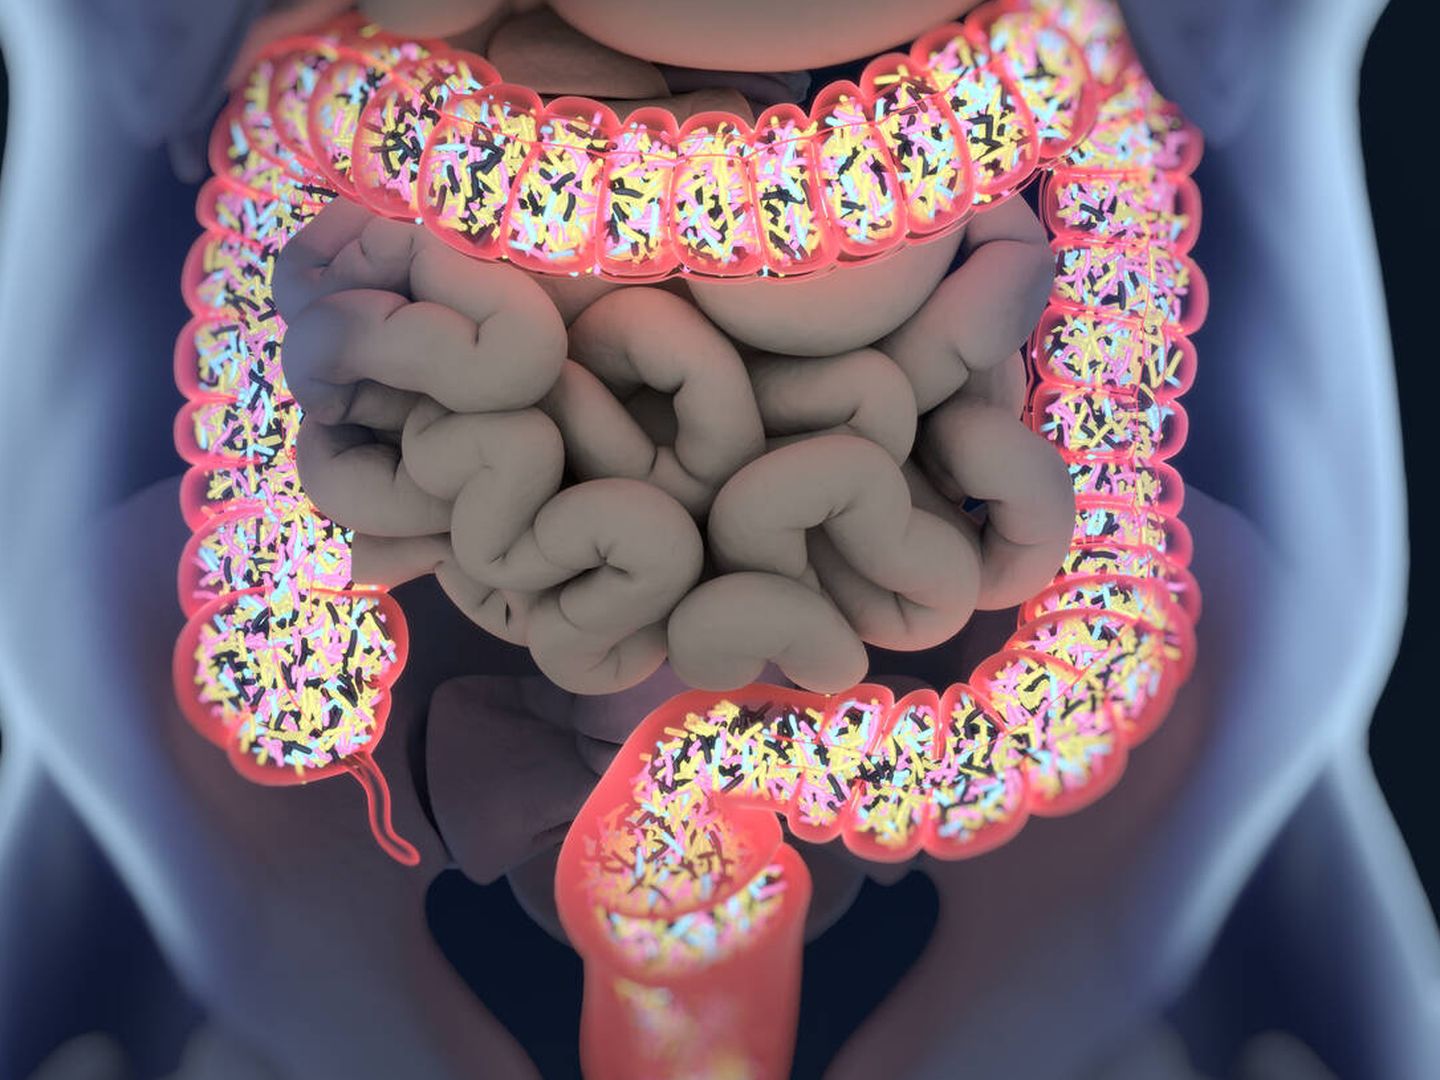 Bacterias en el intestino. (iStock)